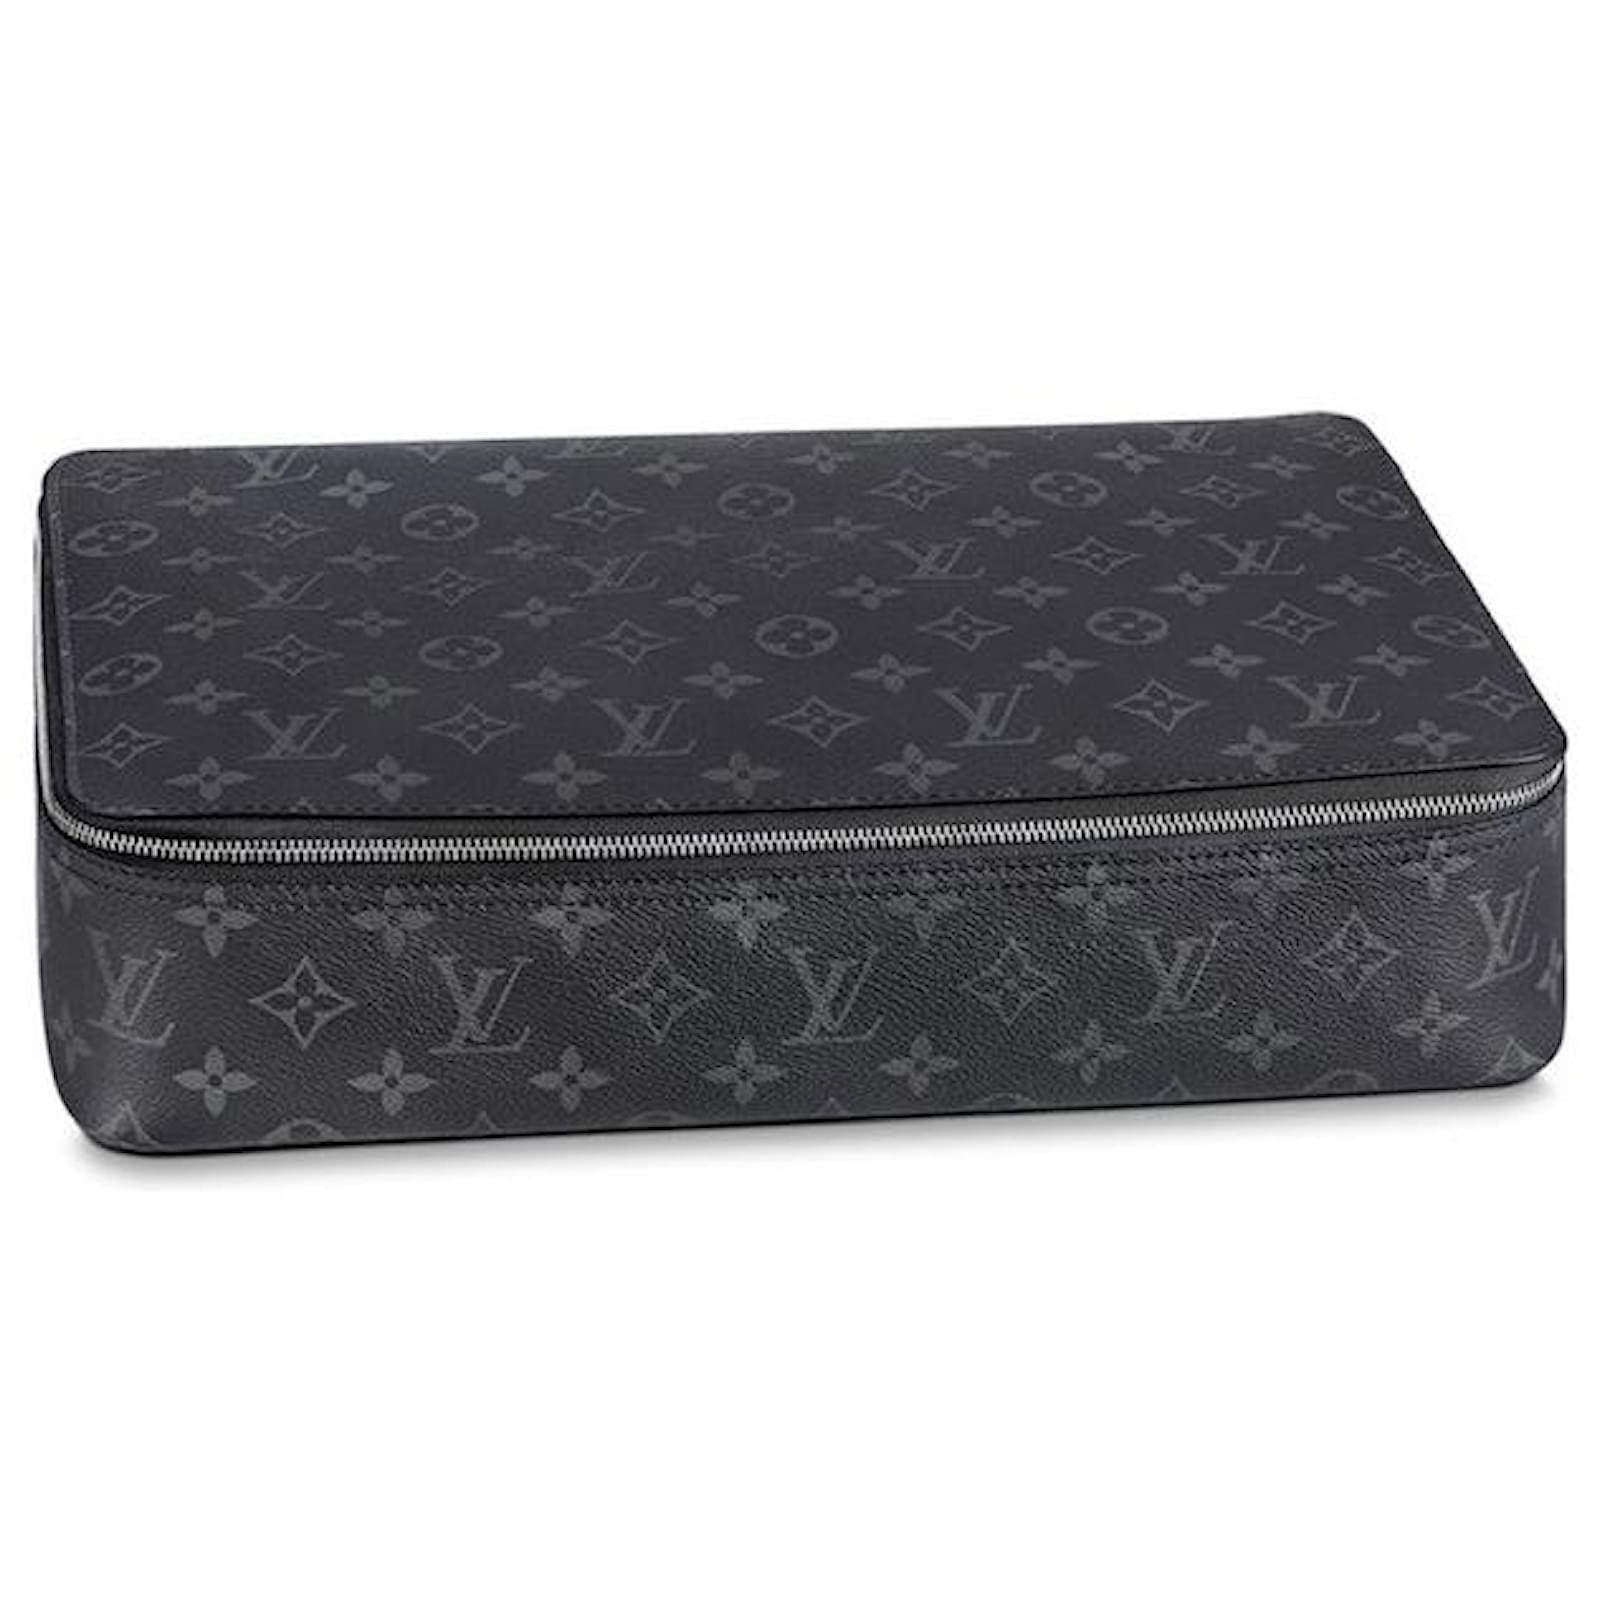 Shop Louis Vuitton Packing cube pm (M44697, M43688) by CITYMONOSHOP